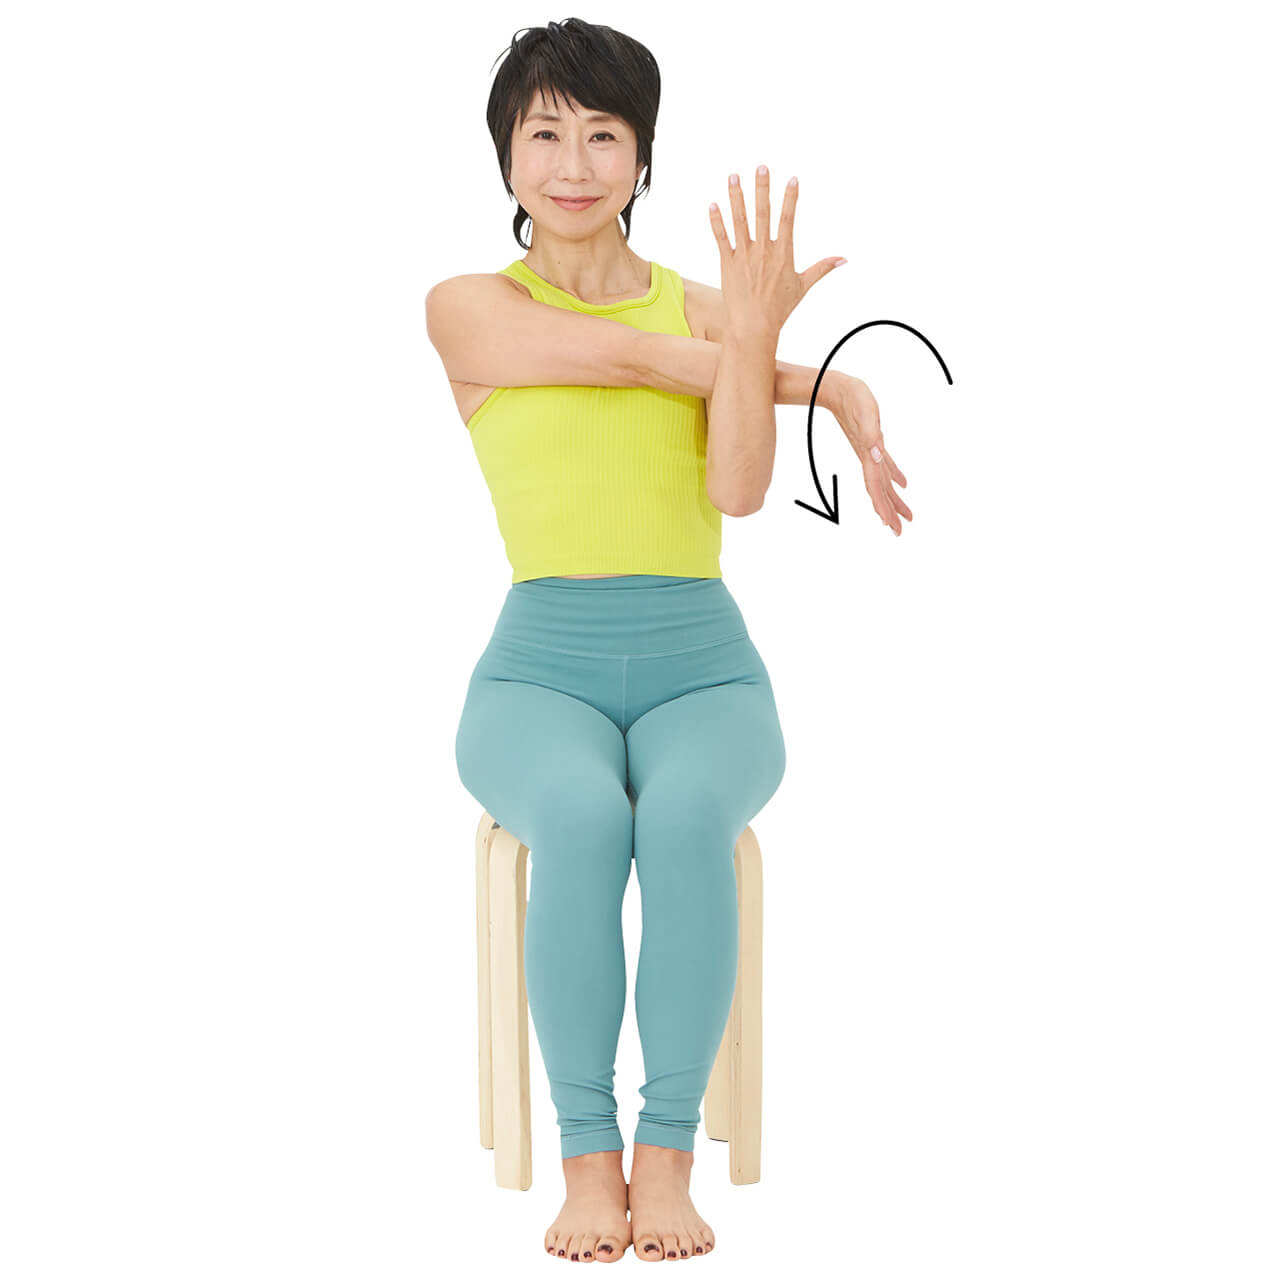 1 椅子に座り、伸ばした腕をもう片方の腕でかかえるようにして胸に引き寄せる。伸ばした腕を前側にひねっての手のひらを外側に向ける。